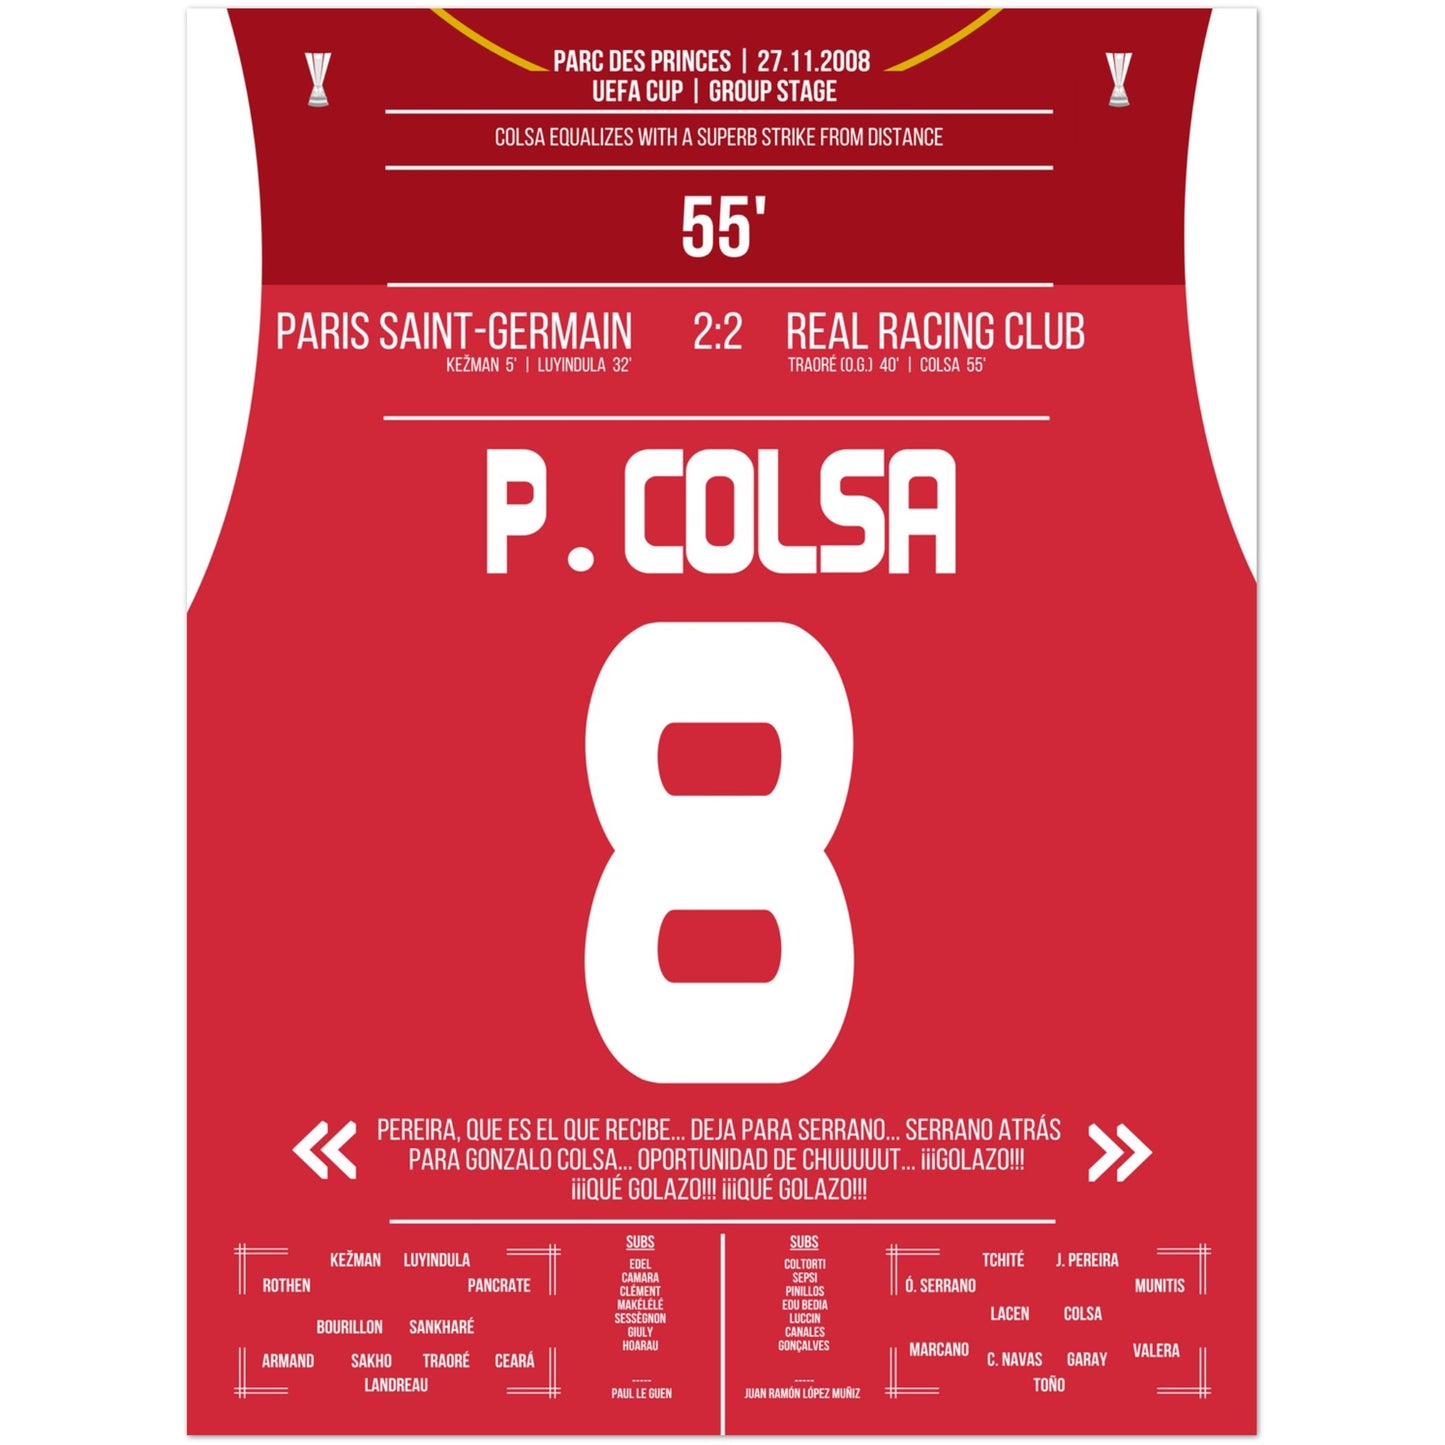 Colsa's Traumtor aus der Distanz gegen PSG in 2008 45x60-cm-18x24-Ohne-Rahmen